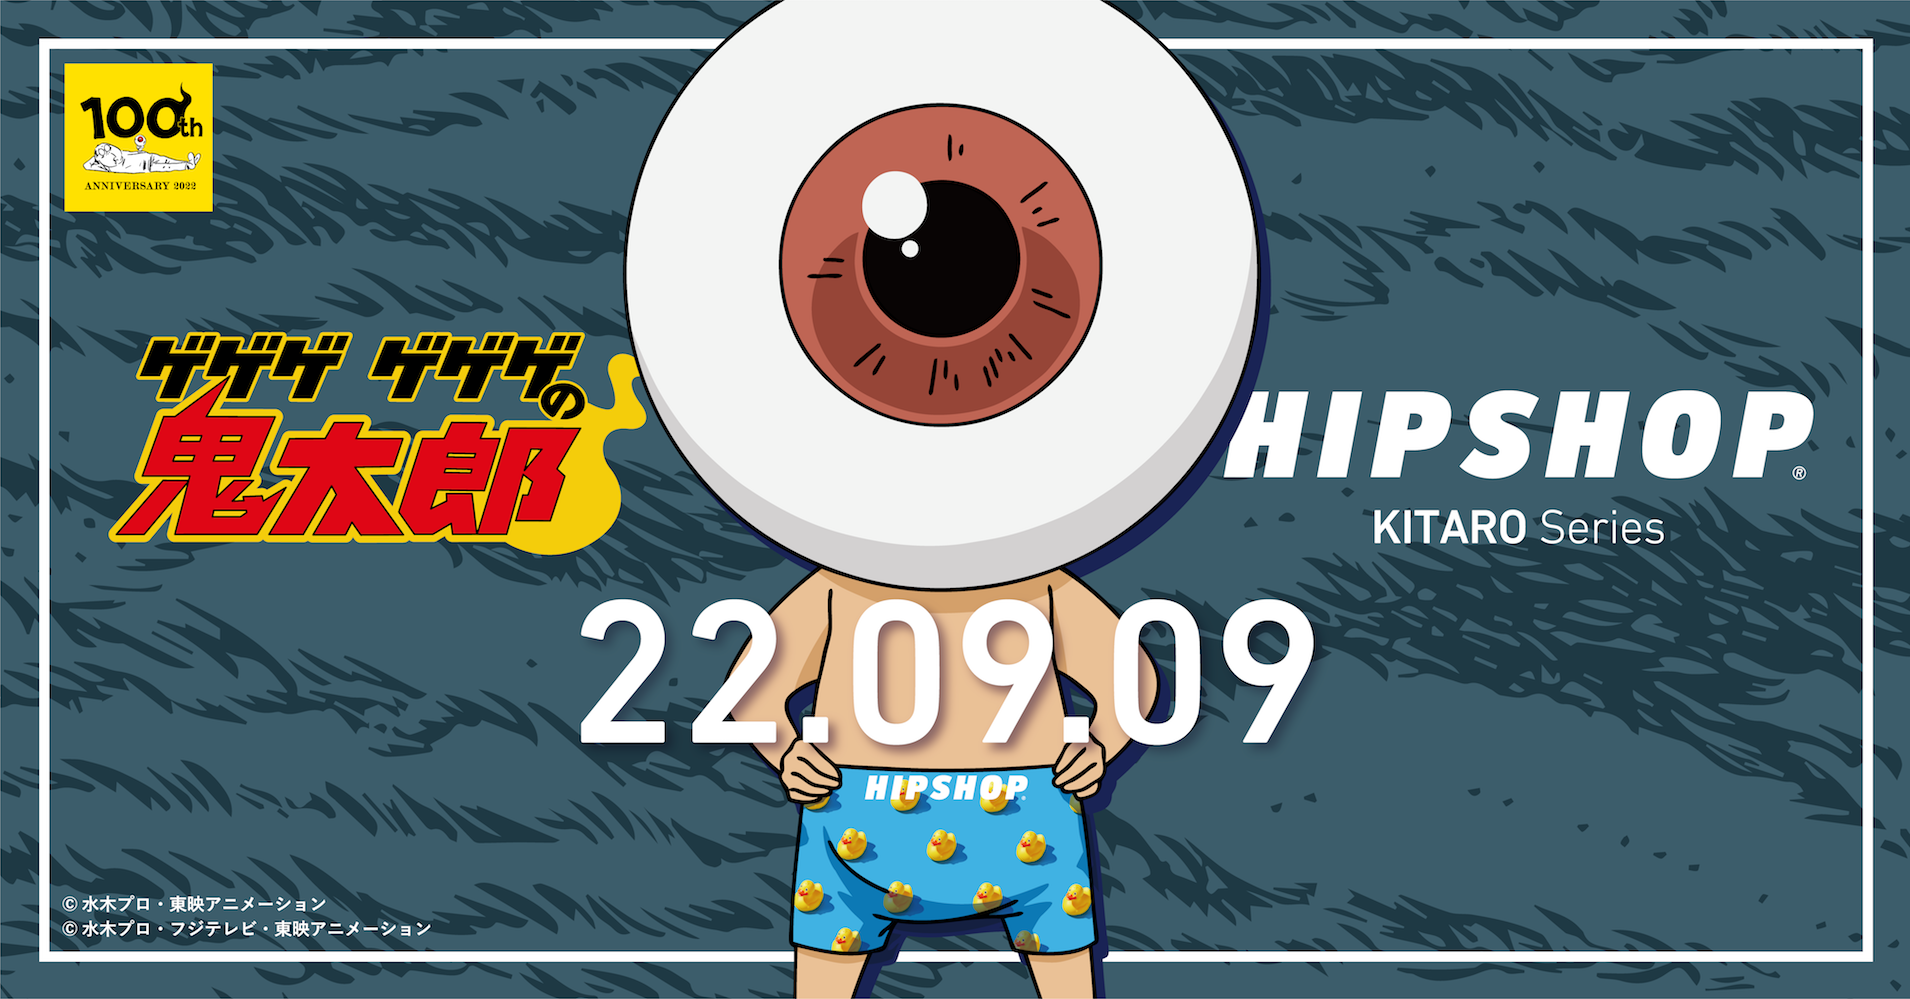 9月9日/16日発売 HIPSHOP x ゲゲゲ ゲゲゲの鬼太郎